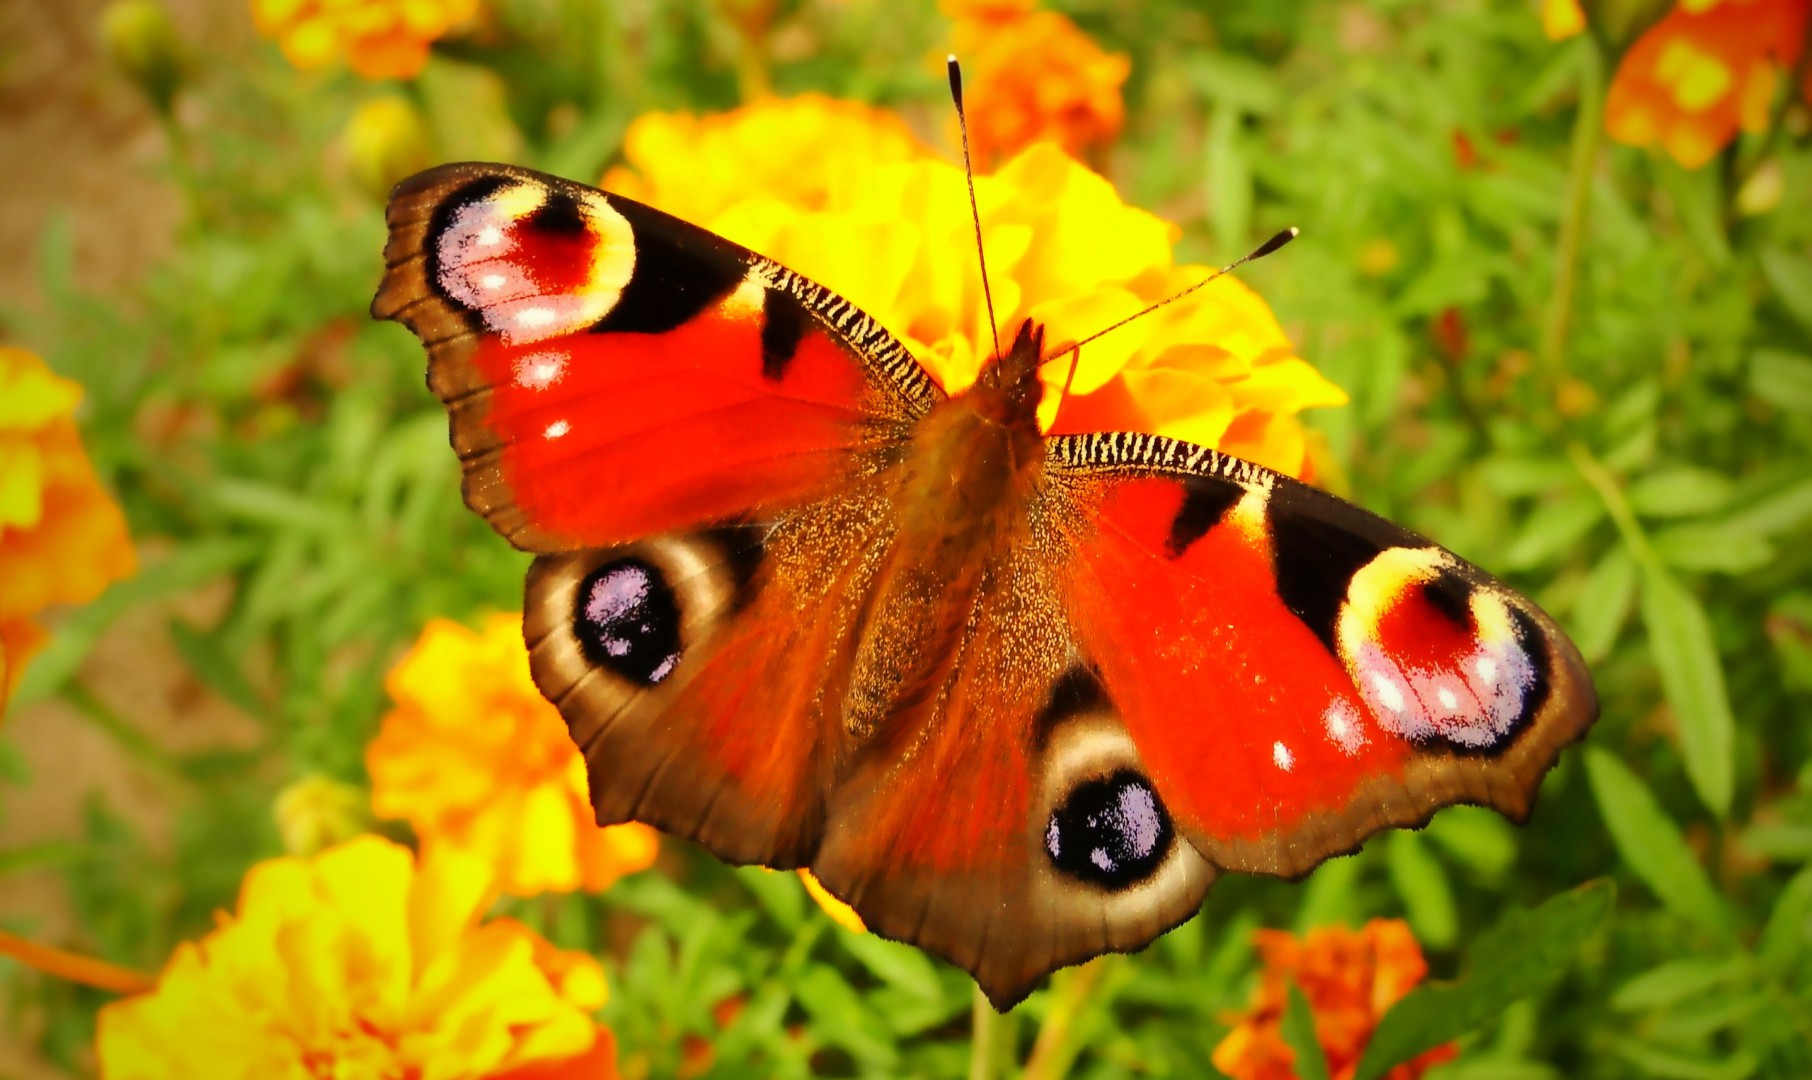 Rusałka pawik spija nektar z kwiatka